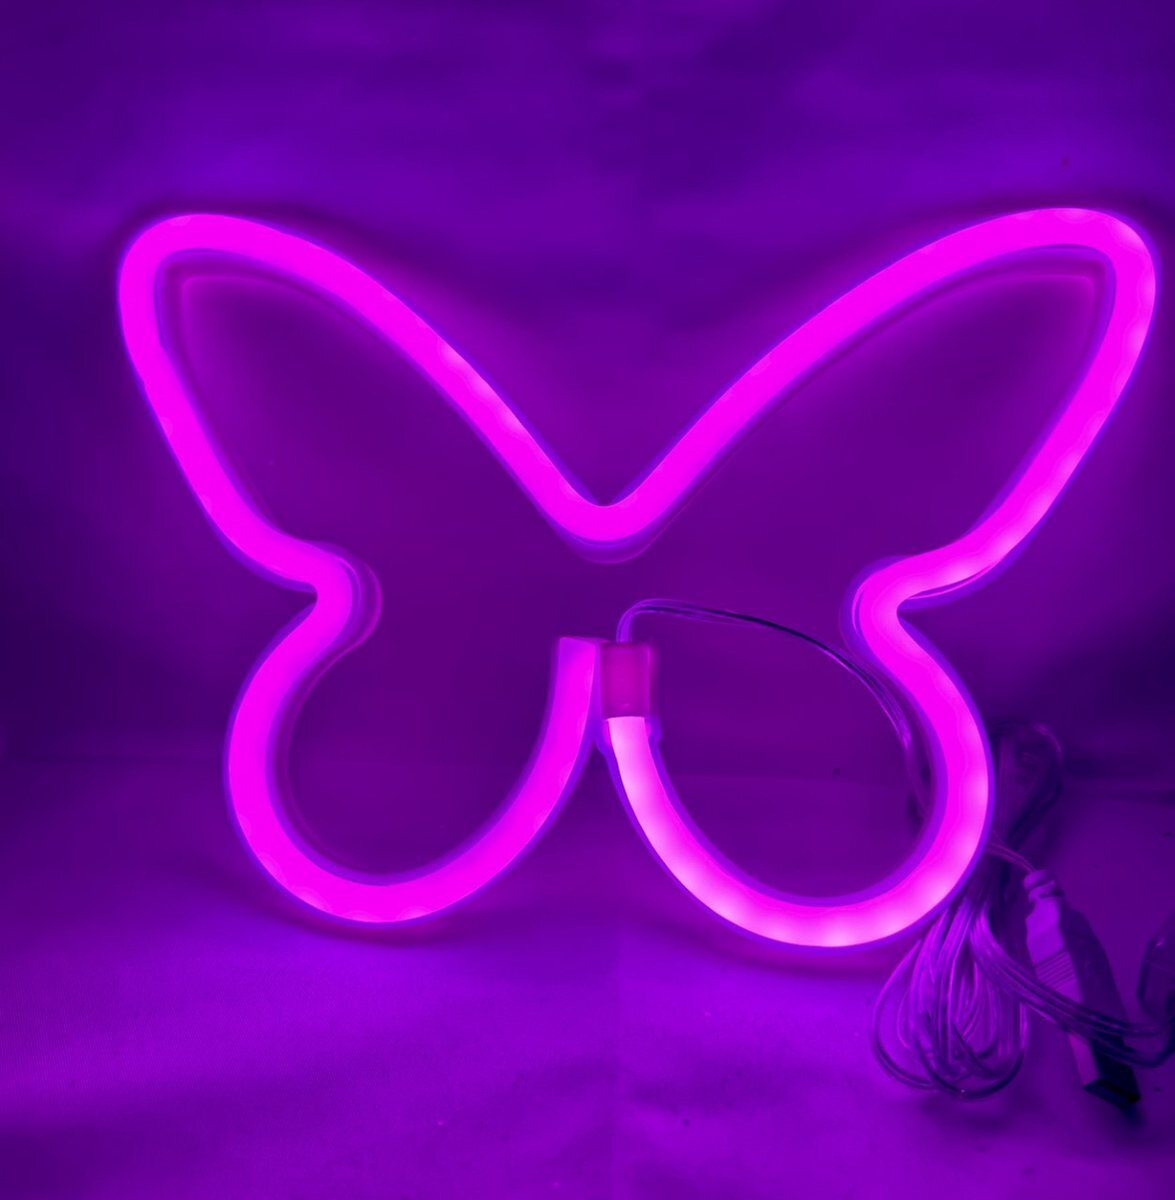 Impuls LED Vlinder met neonlicht - roze neon licht - Op Batterijen en USB - hoogte 22.5 x 16 x 2 cm - Wandlamp - Sfeerlamp - Decoratieve verlichting - Woonaccessoires